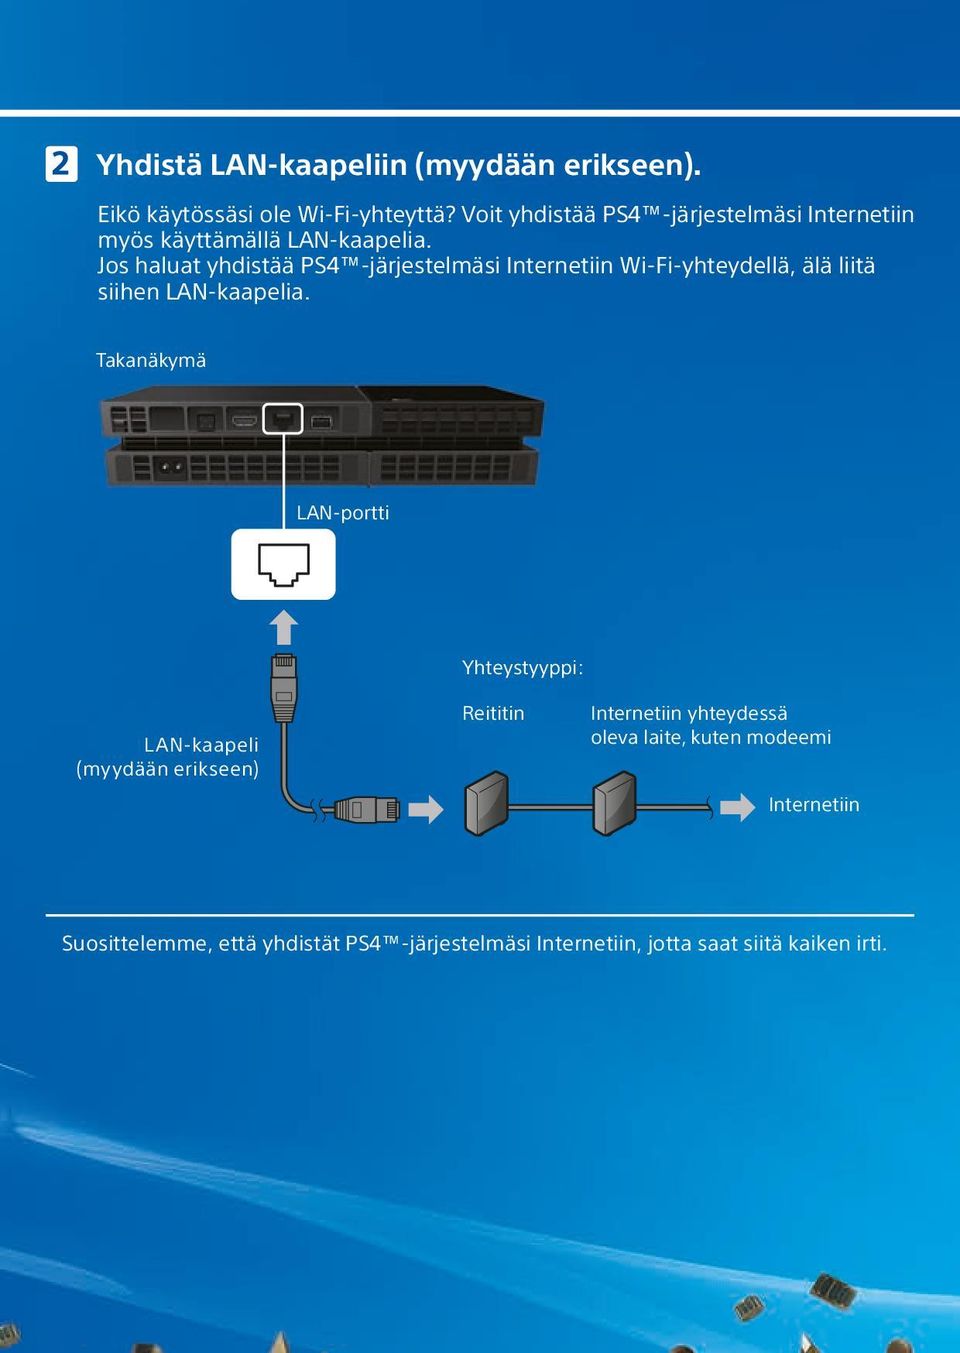 Jos haluat yhdistää PS4 -järjestelmäsi Internetiin Wi-Fi-yhteydellä, älä liitä siihen LAN-kaapelia.